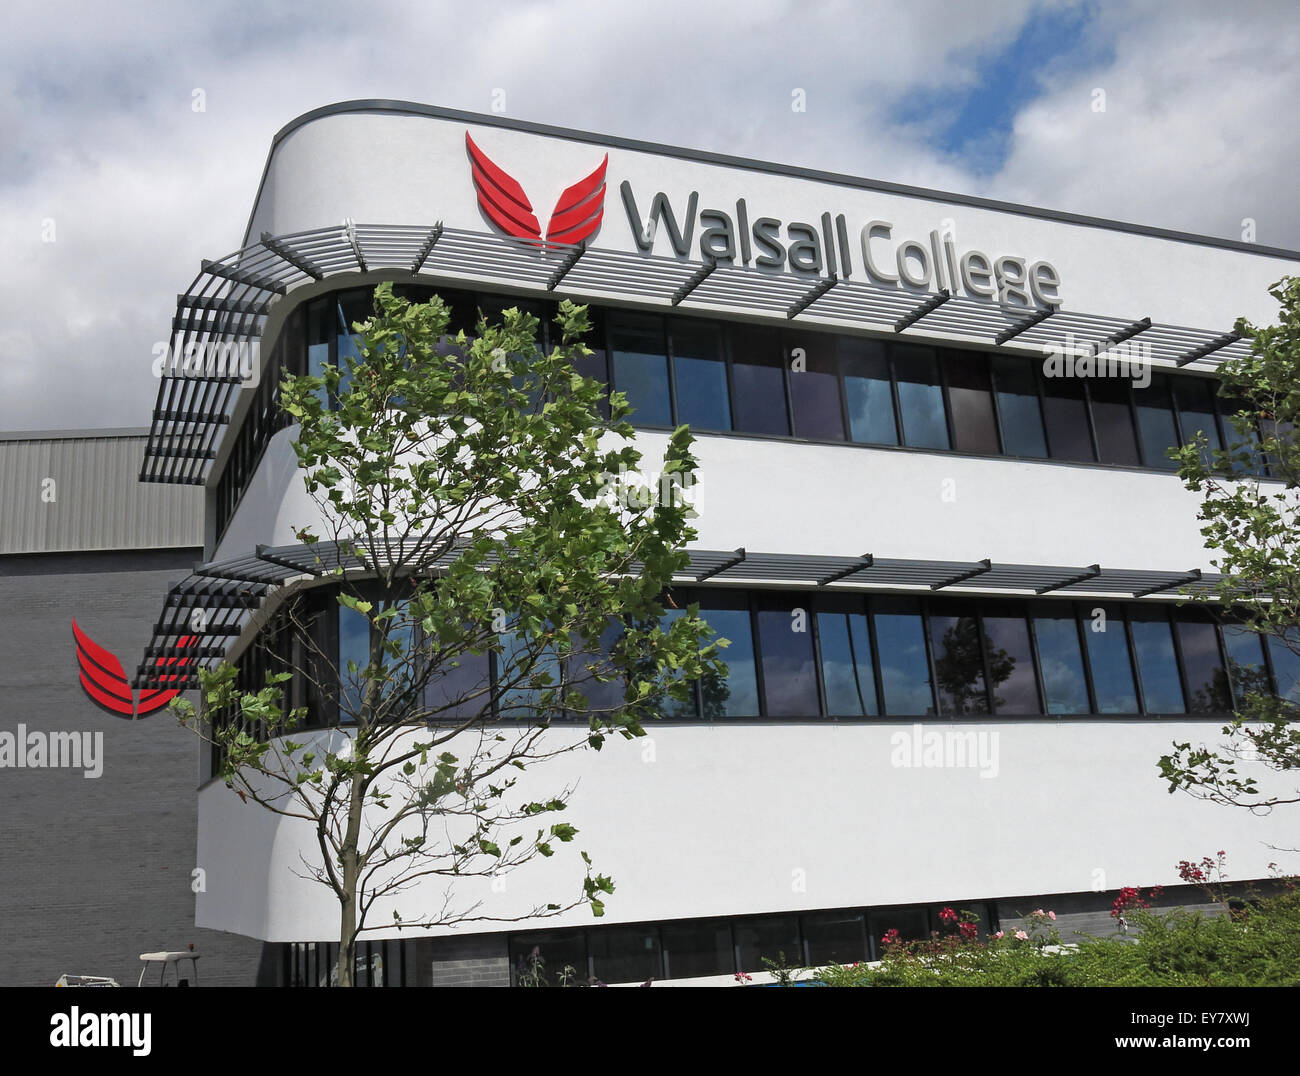 Walsall nuovo collegio edificio, West Midlands, England, Regno Unito Foto Stock